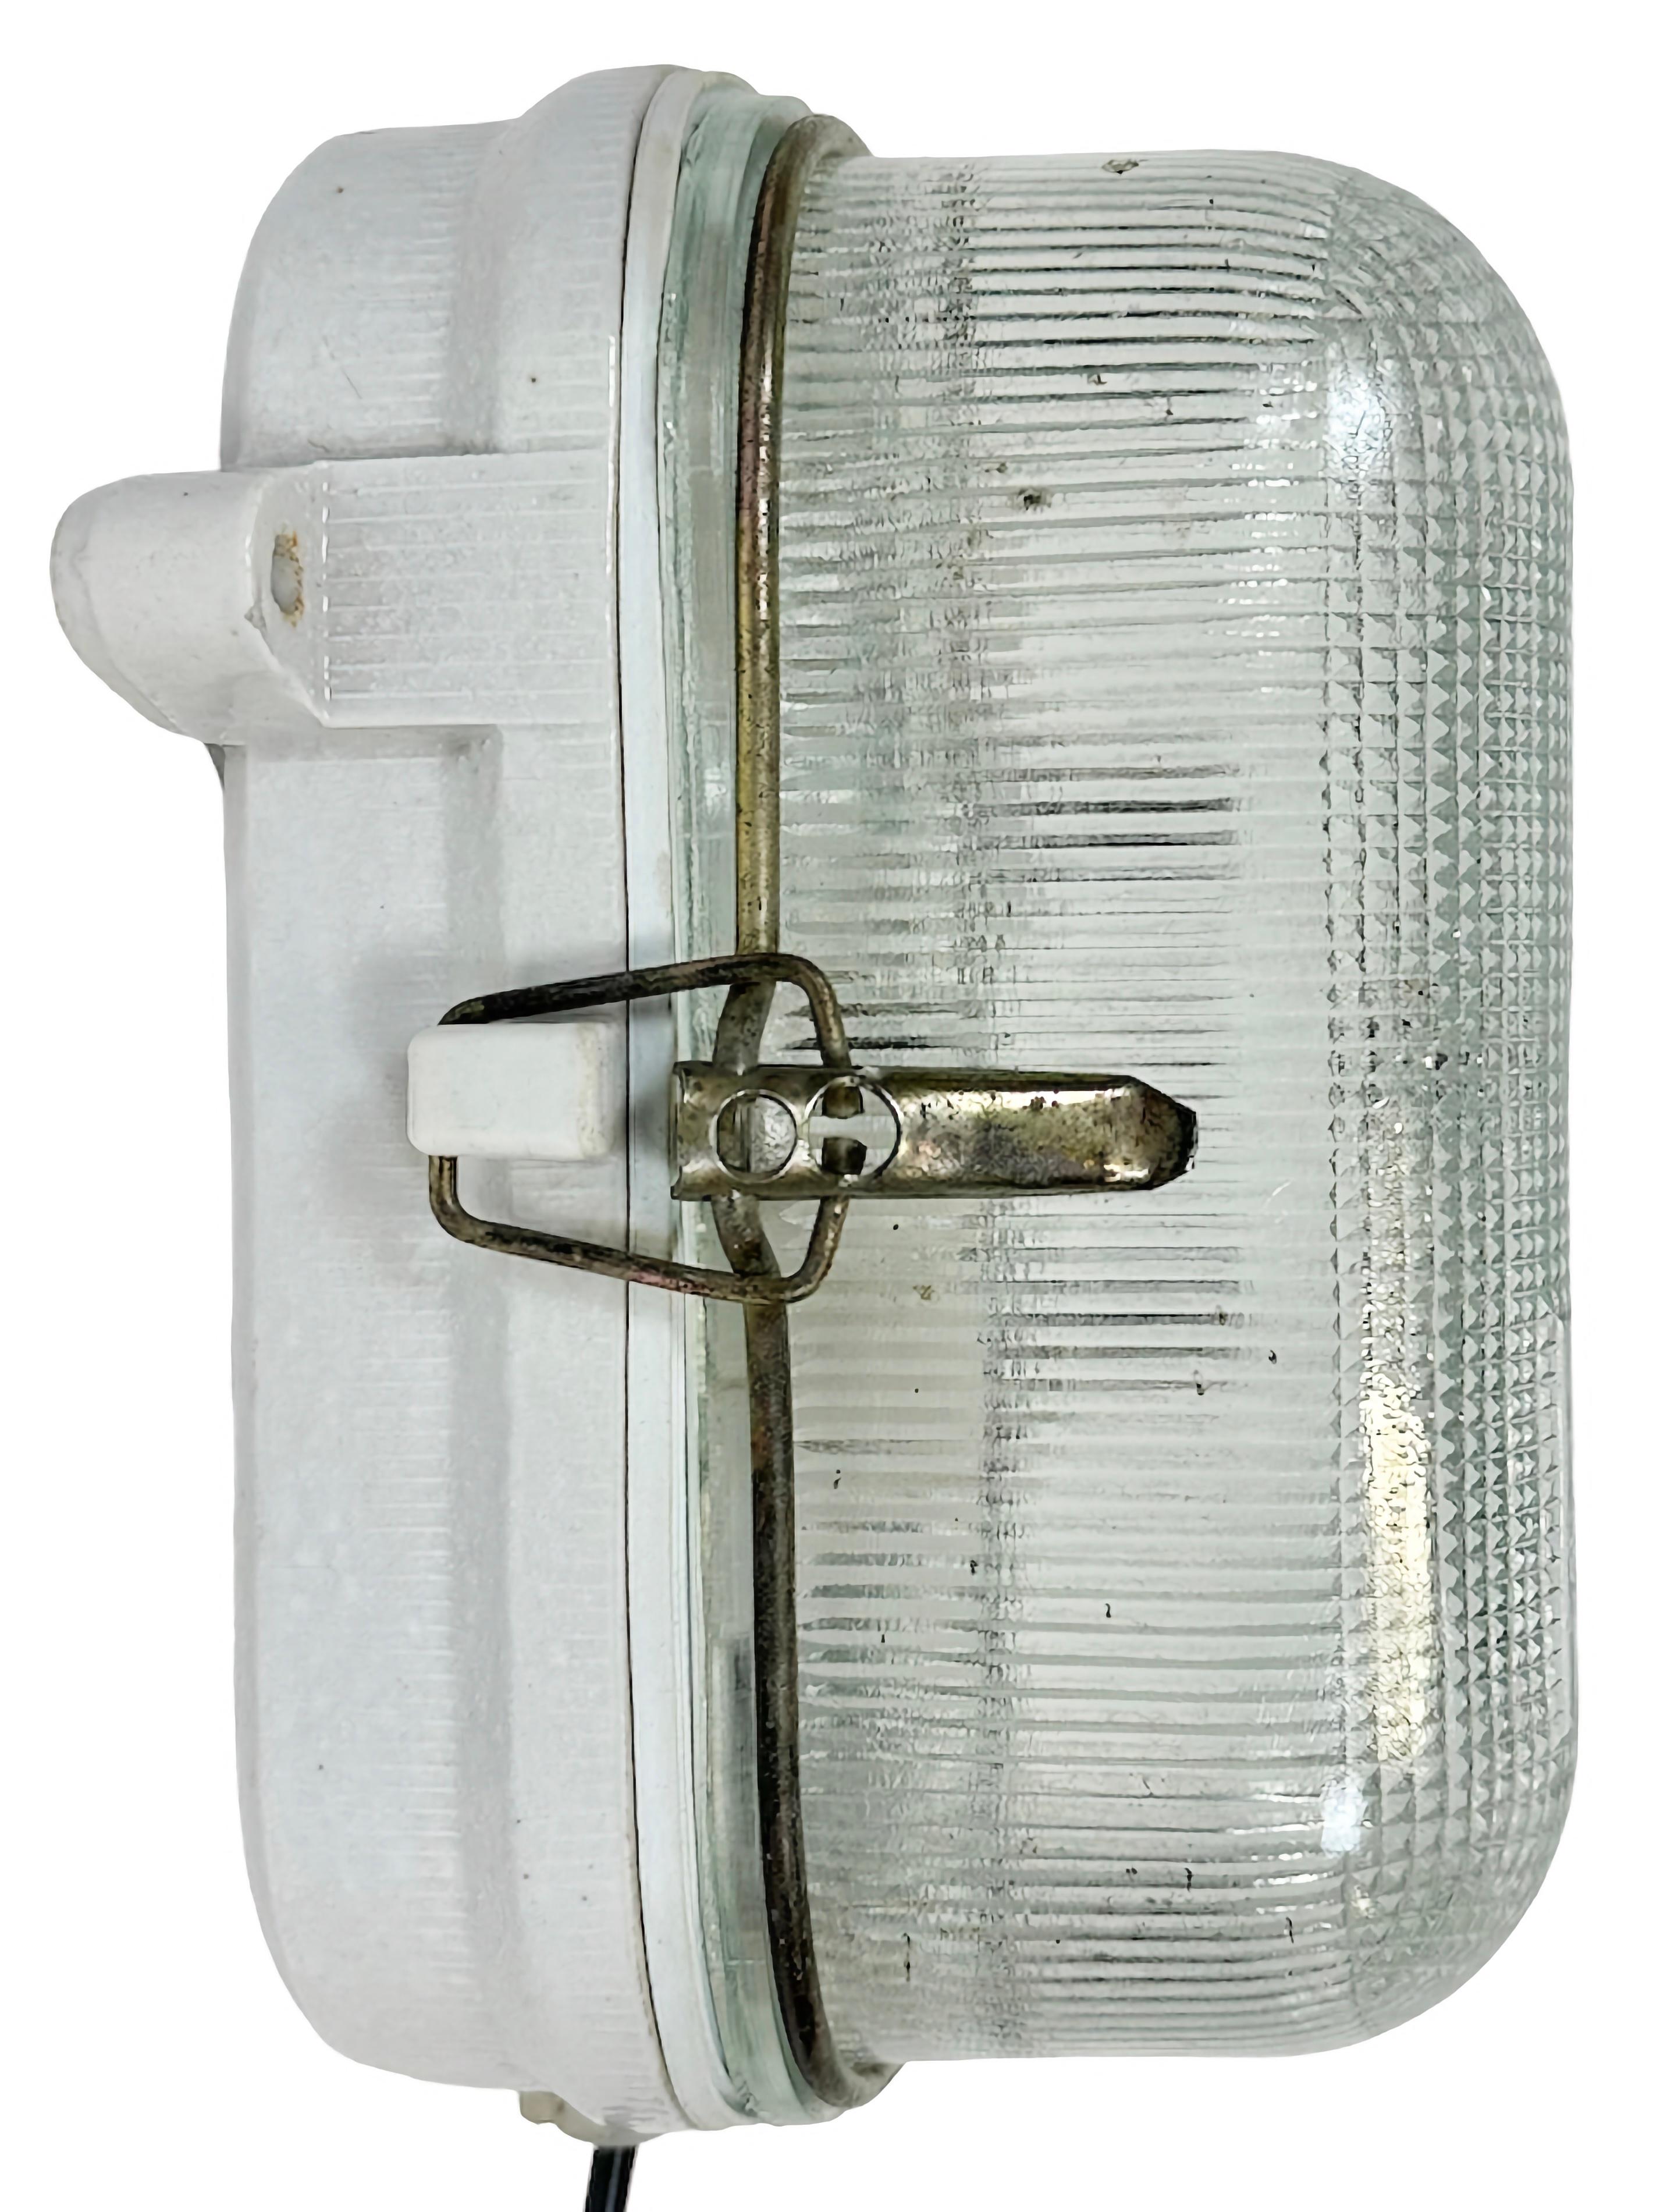 Vintage-Industrieleuchte, hergestellt in der ehemaligen Sowjetunion in den 1970er Jahren, mit weißem Porzellankörper und gerippter Glasabdeckung. Die Fassung benötigt E27/E26-Glühbirnen. Neues Kabel. Das Gewicht der Leuchte beträgt 2 kg.